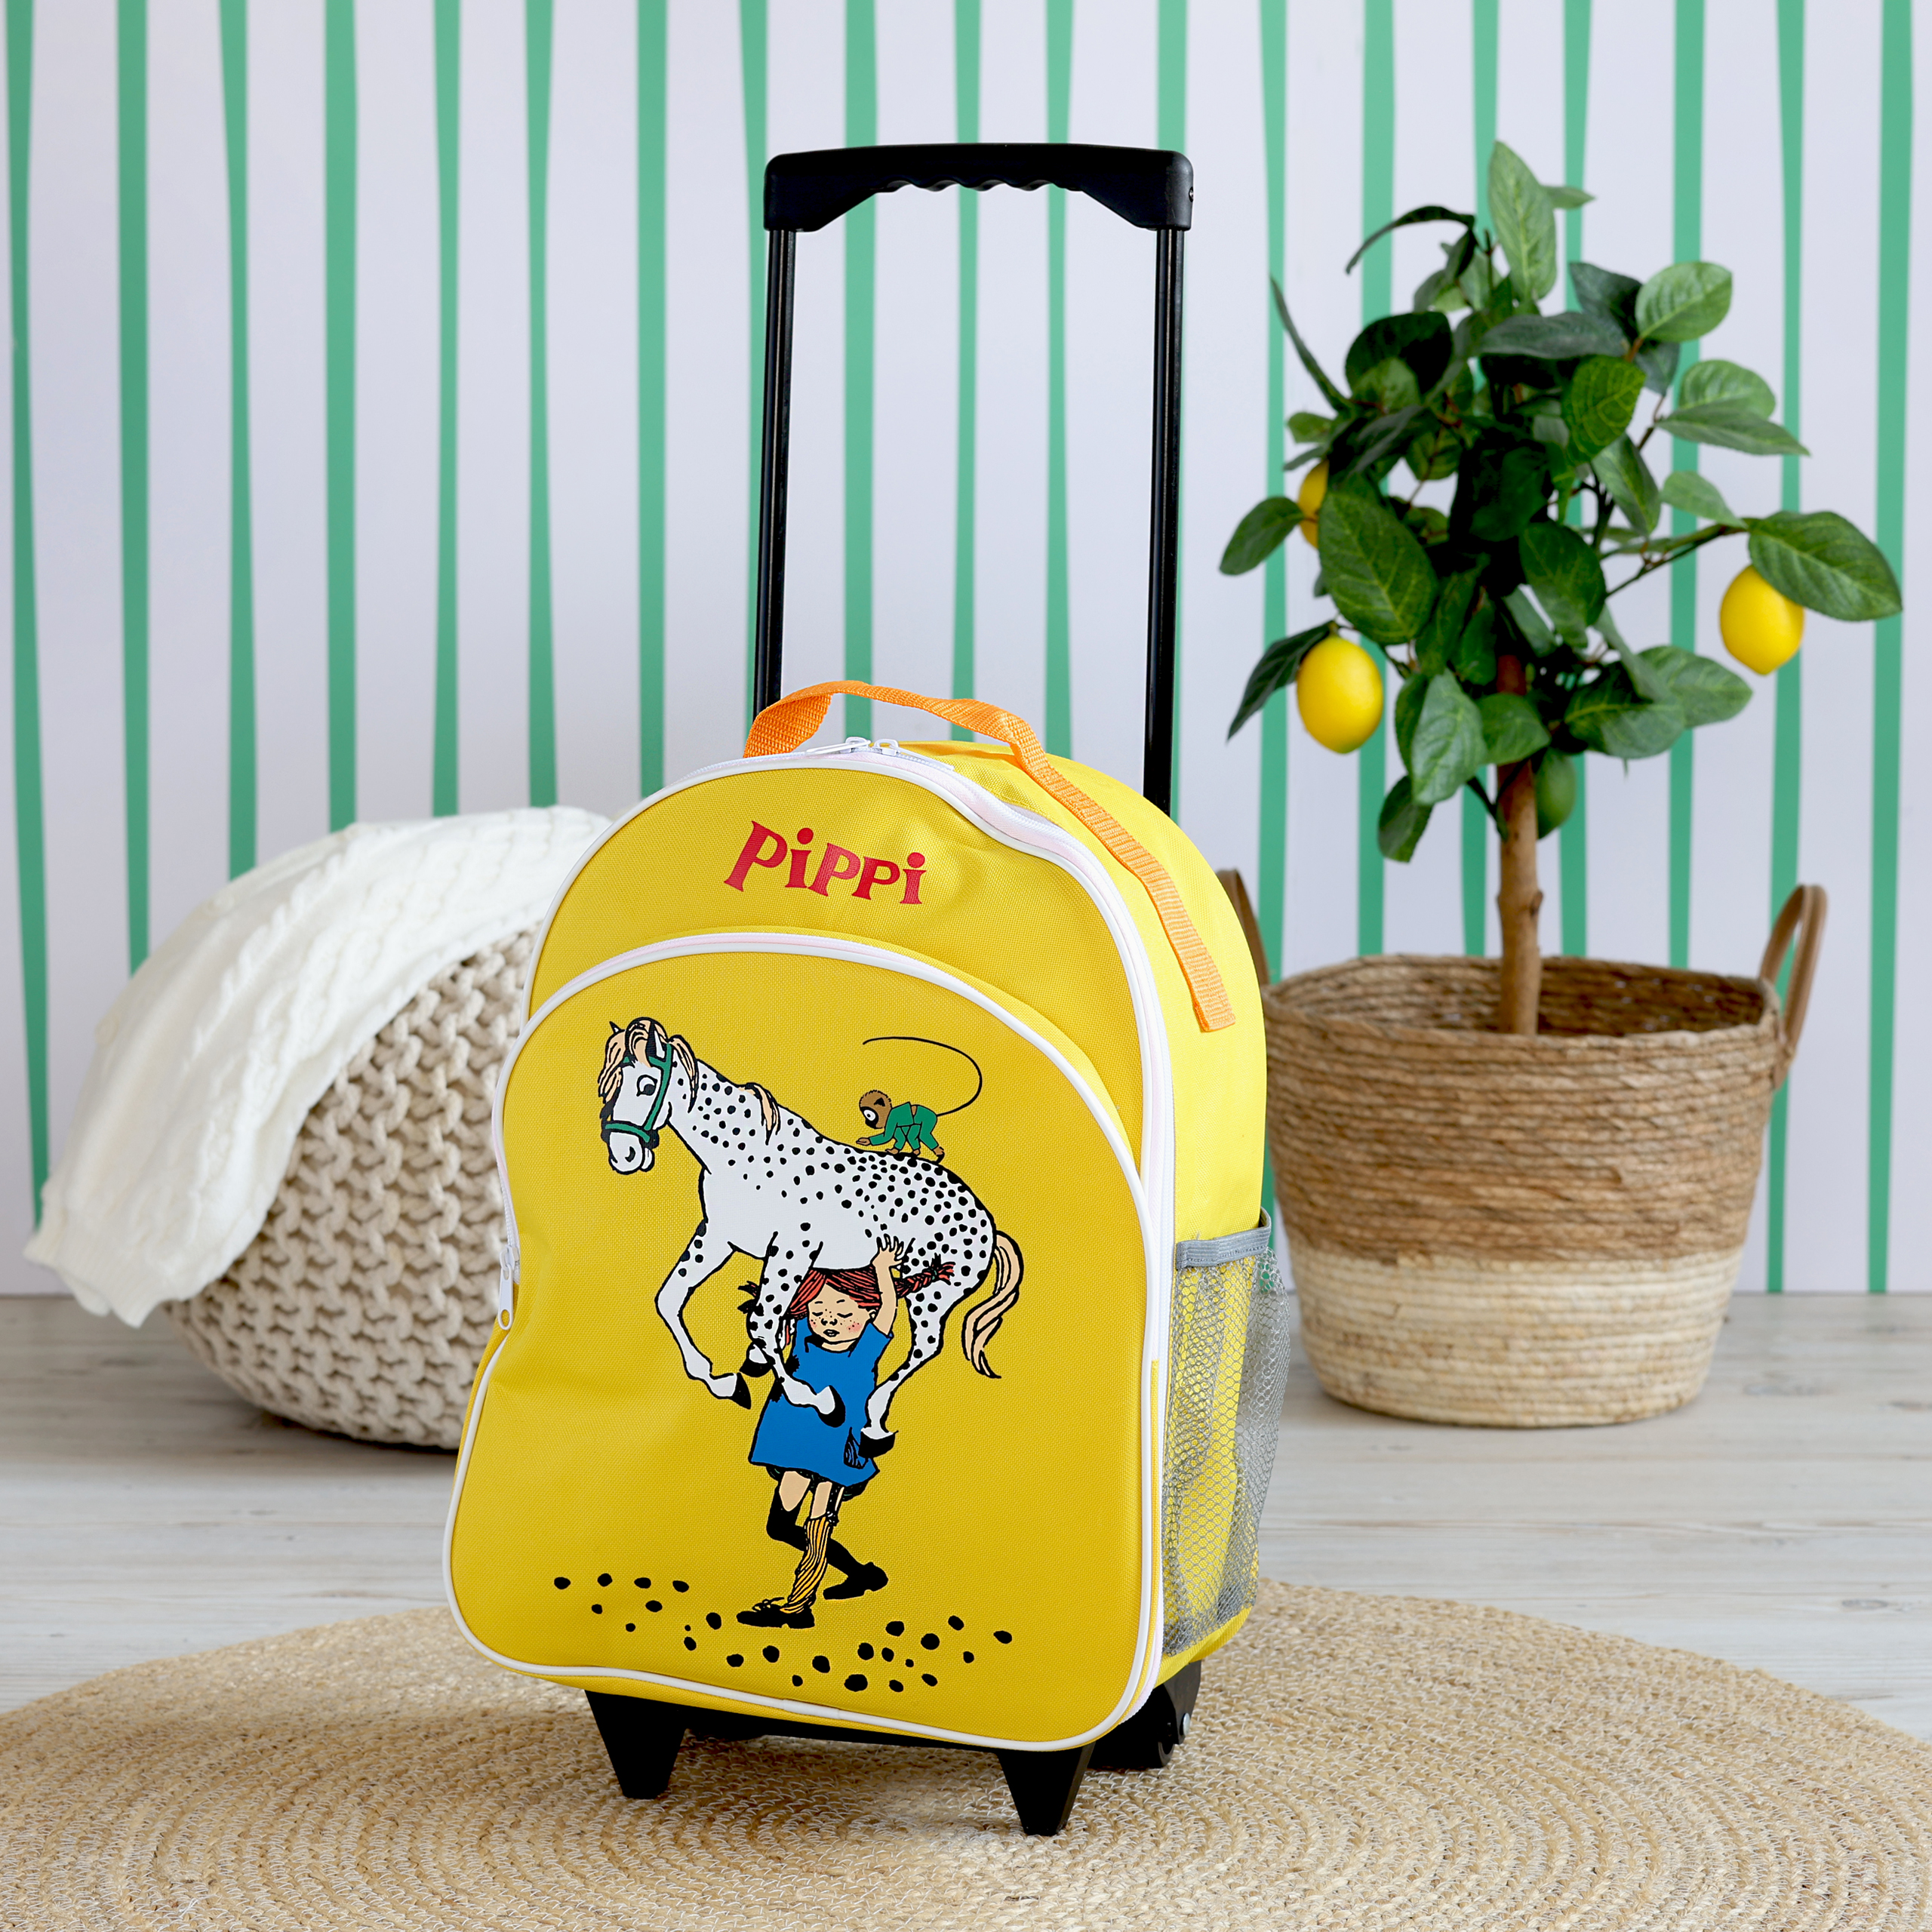 Pippi pippi kindertasche reisetasche gelb